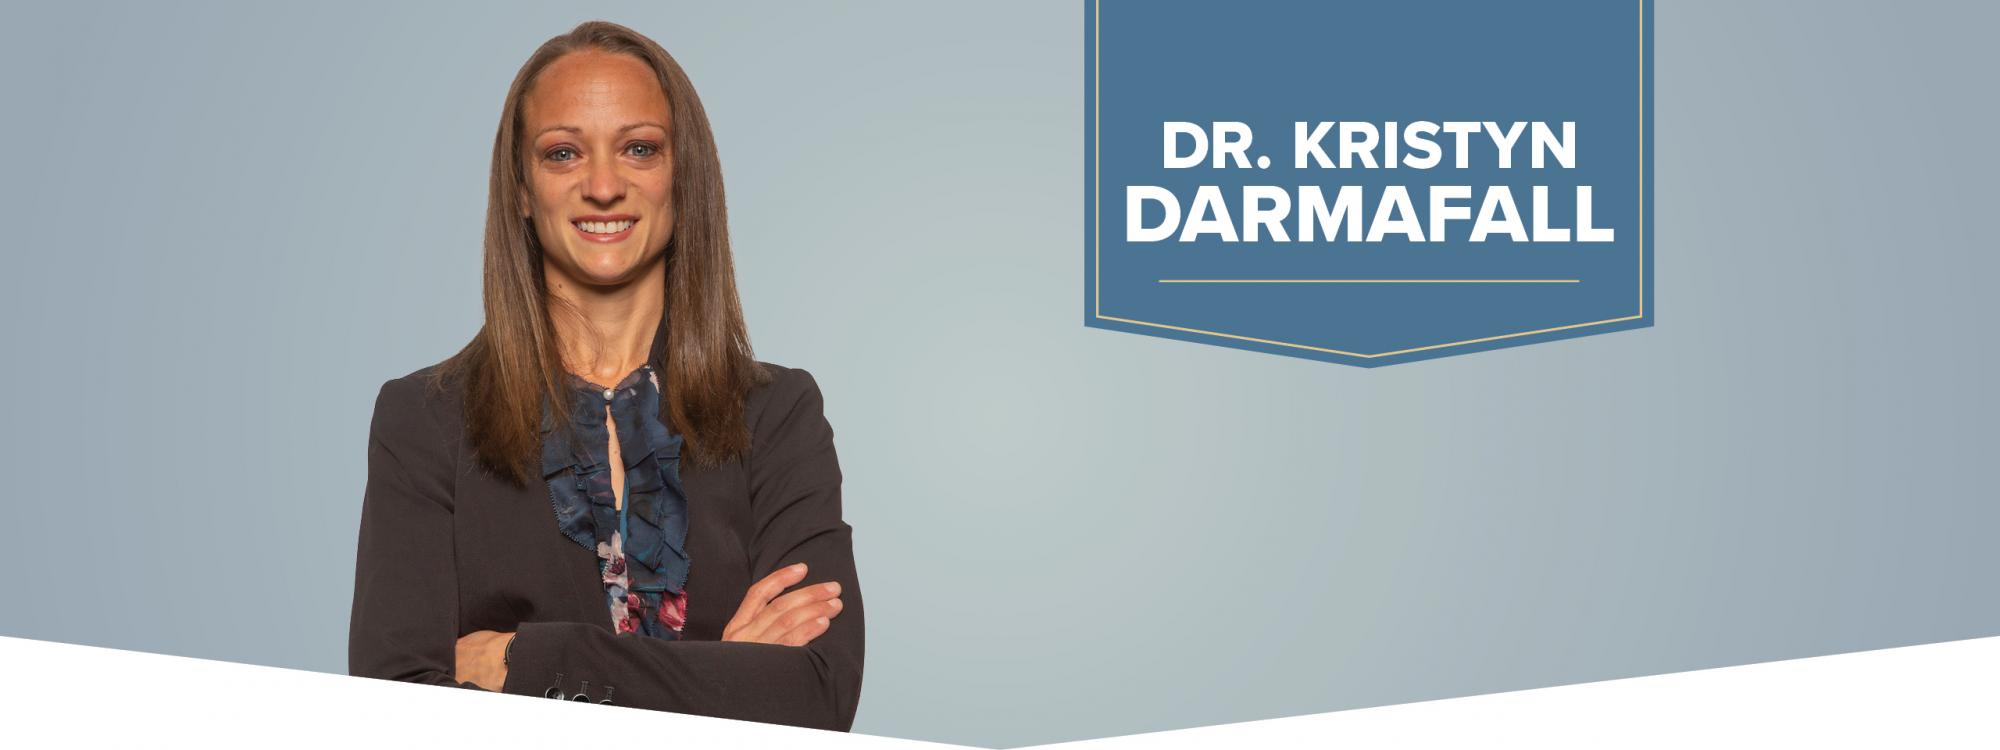 Dr. Kristyn Darmafall